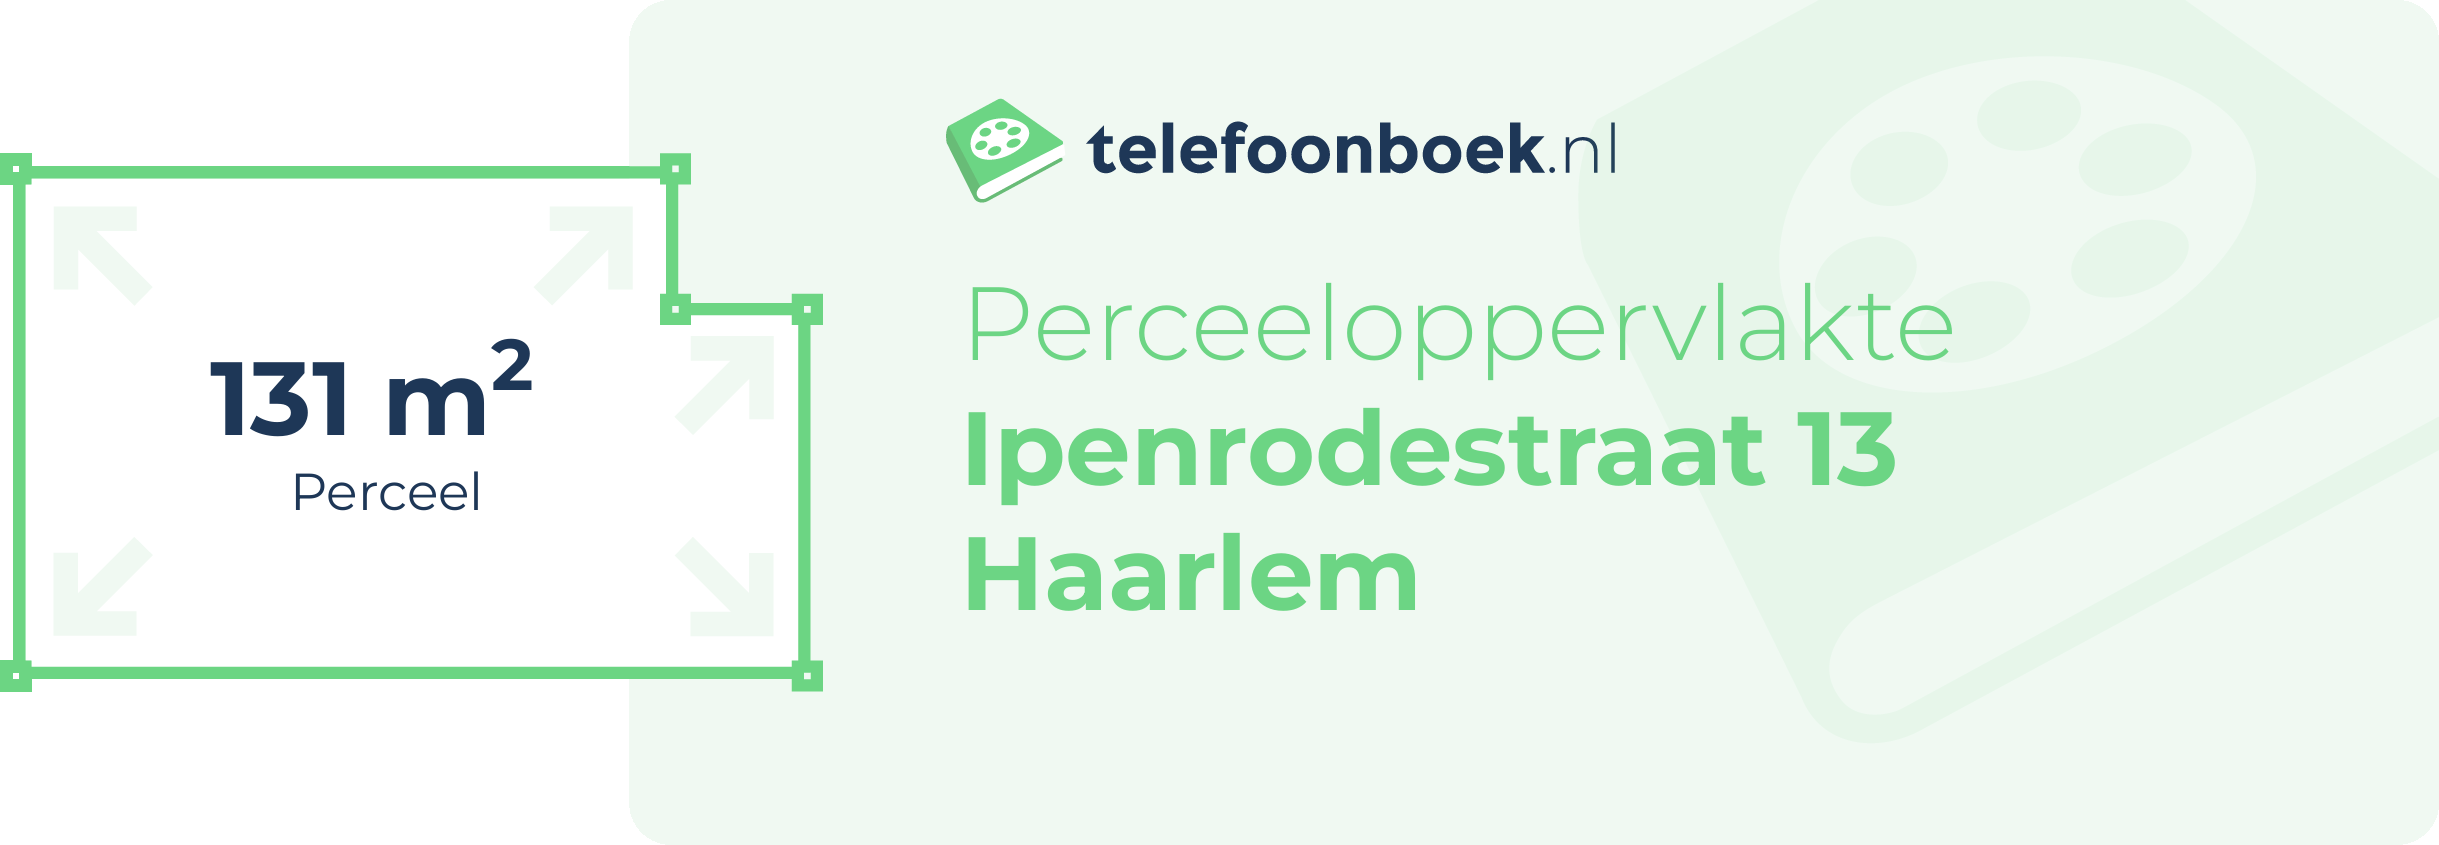 Perceeloppervlakte Ipenrodestraat 13 Haarlem